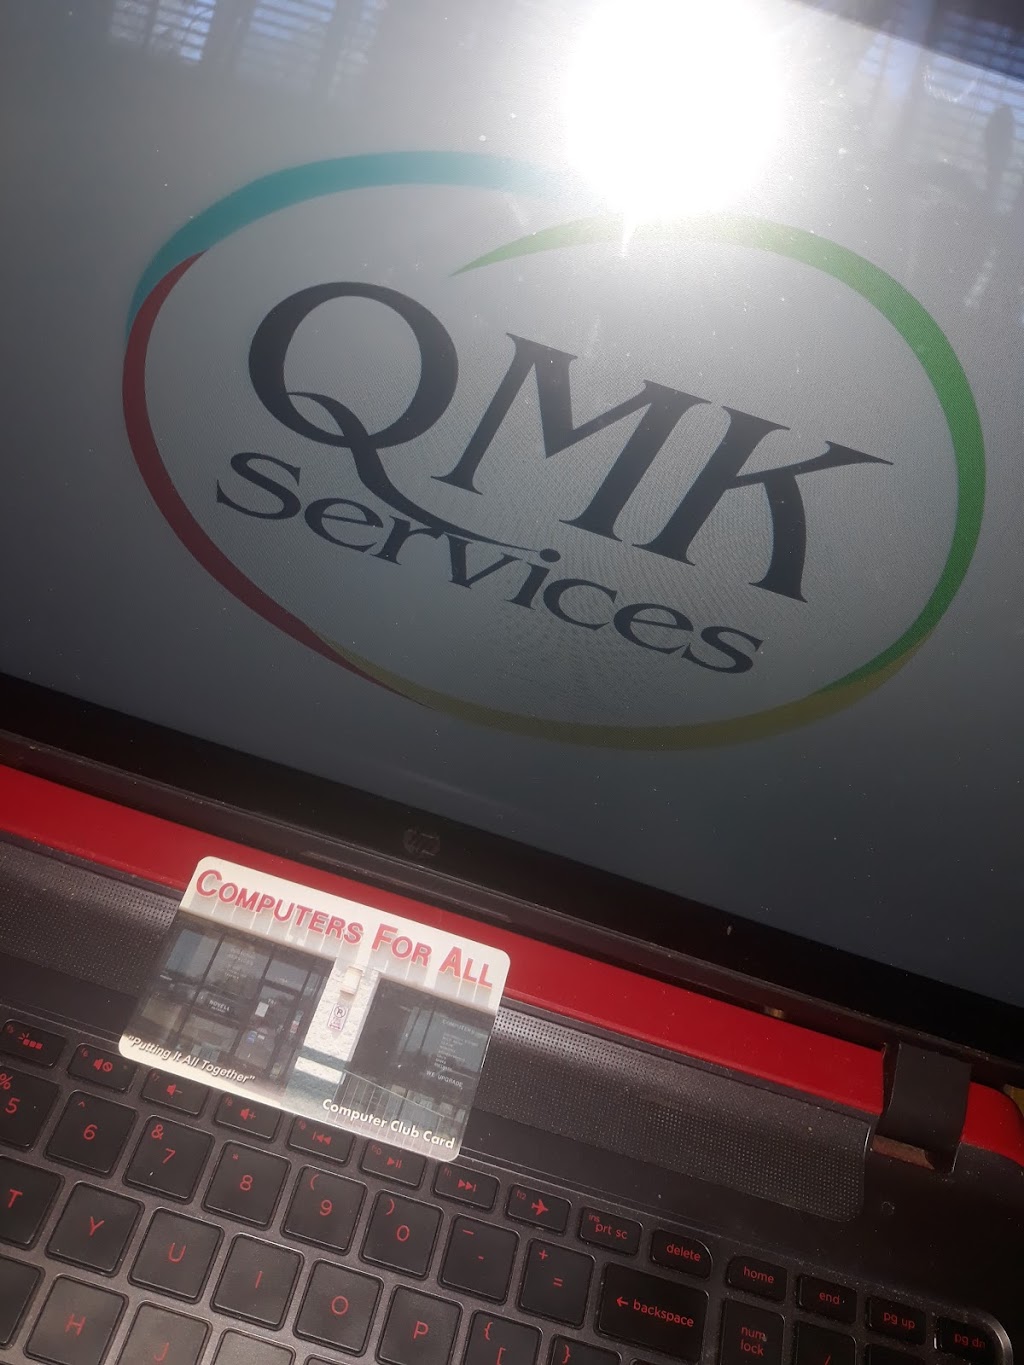 QMK Services | 1403 Munn Dr, Ennis, TX 75119, USA | Phone: (972) 875-6667